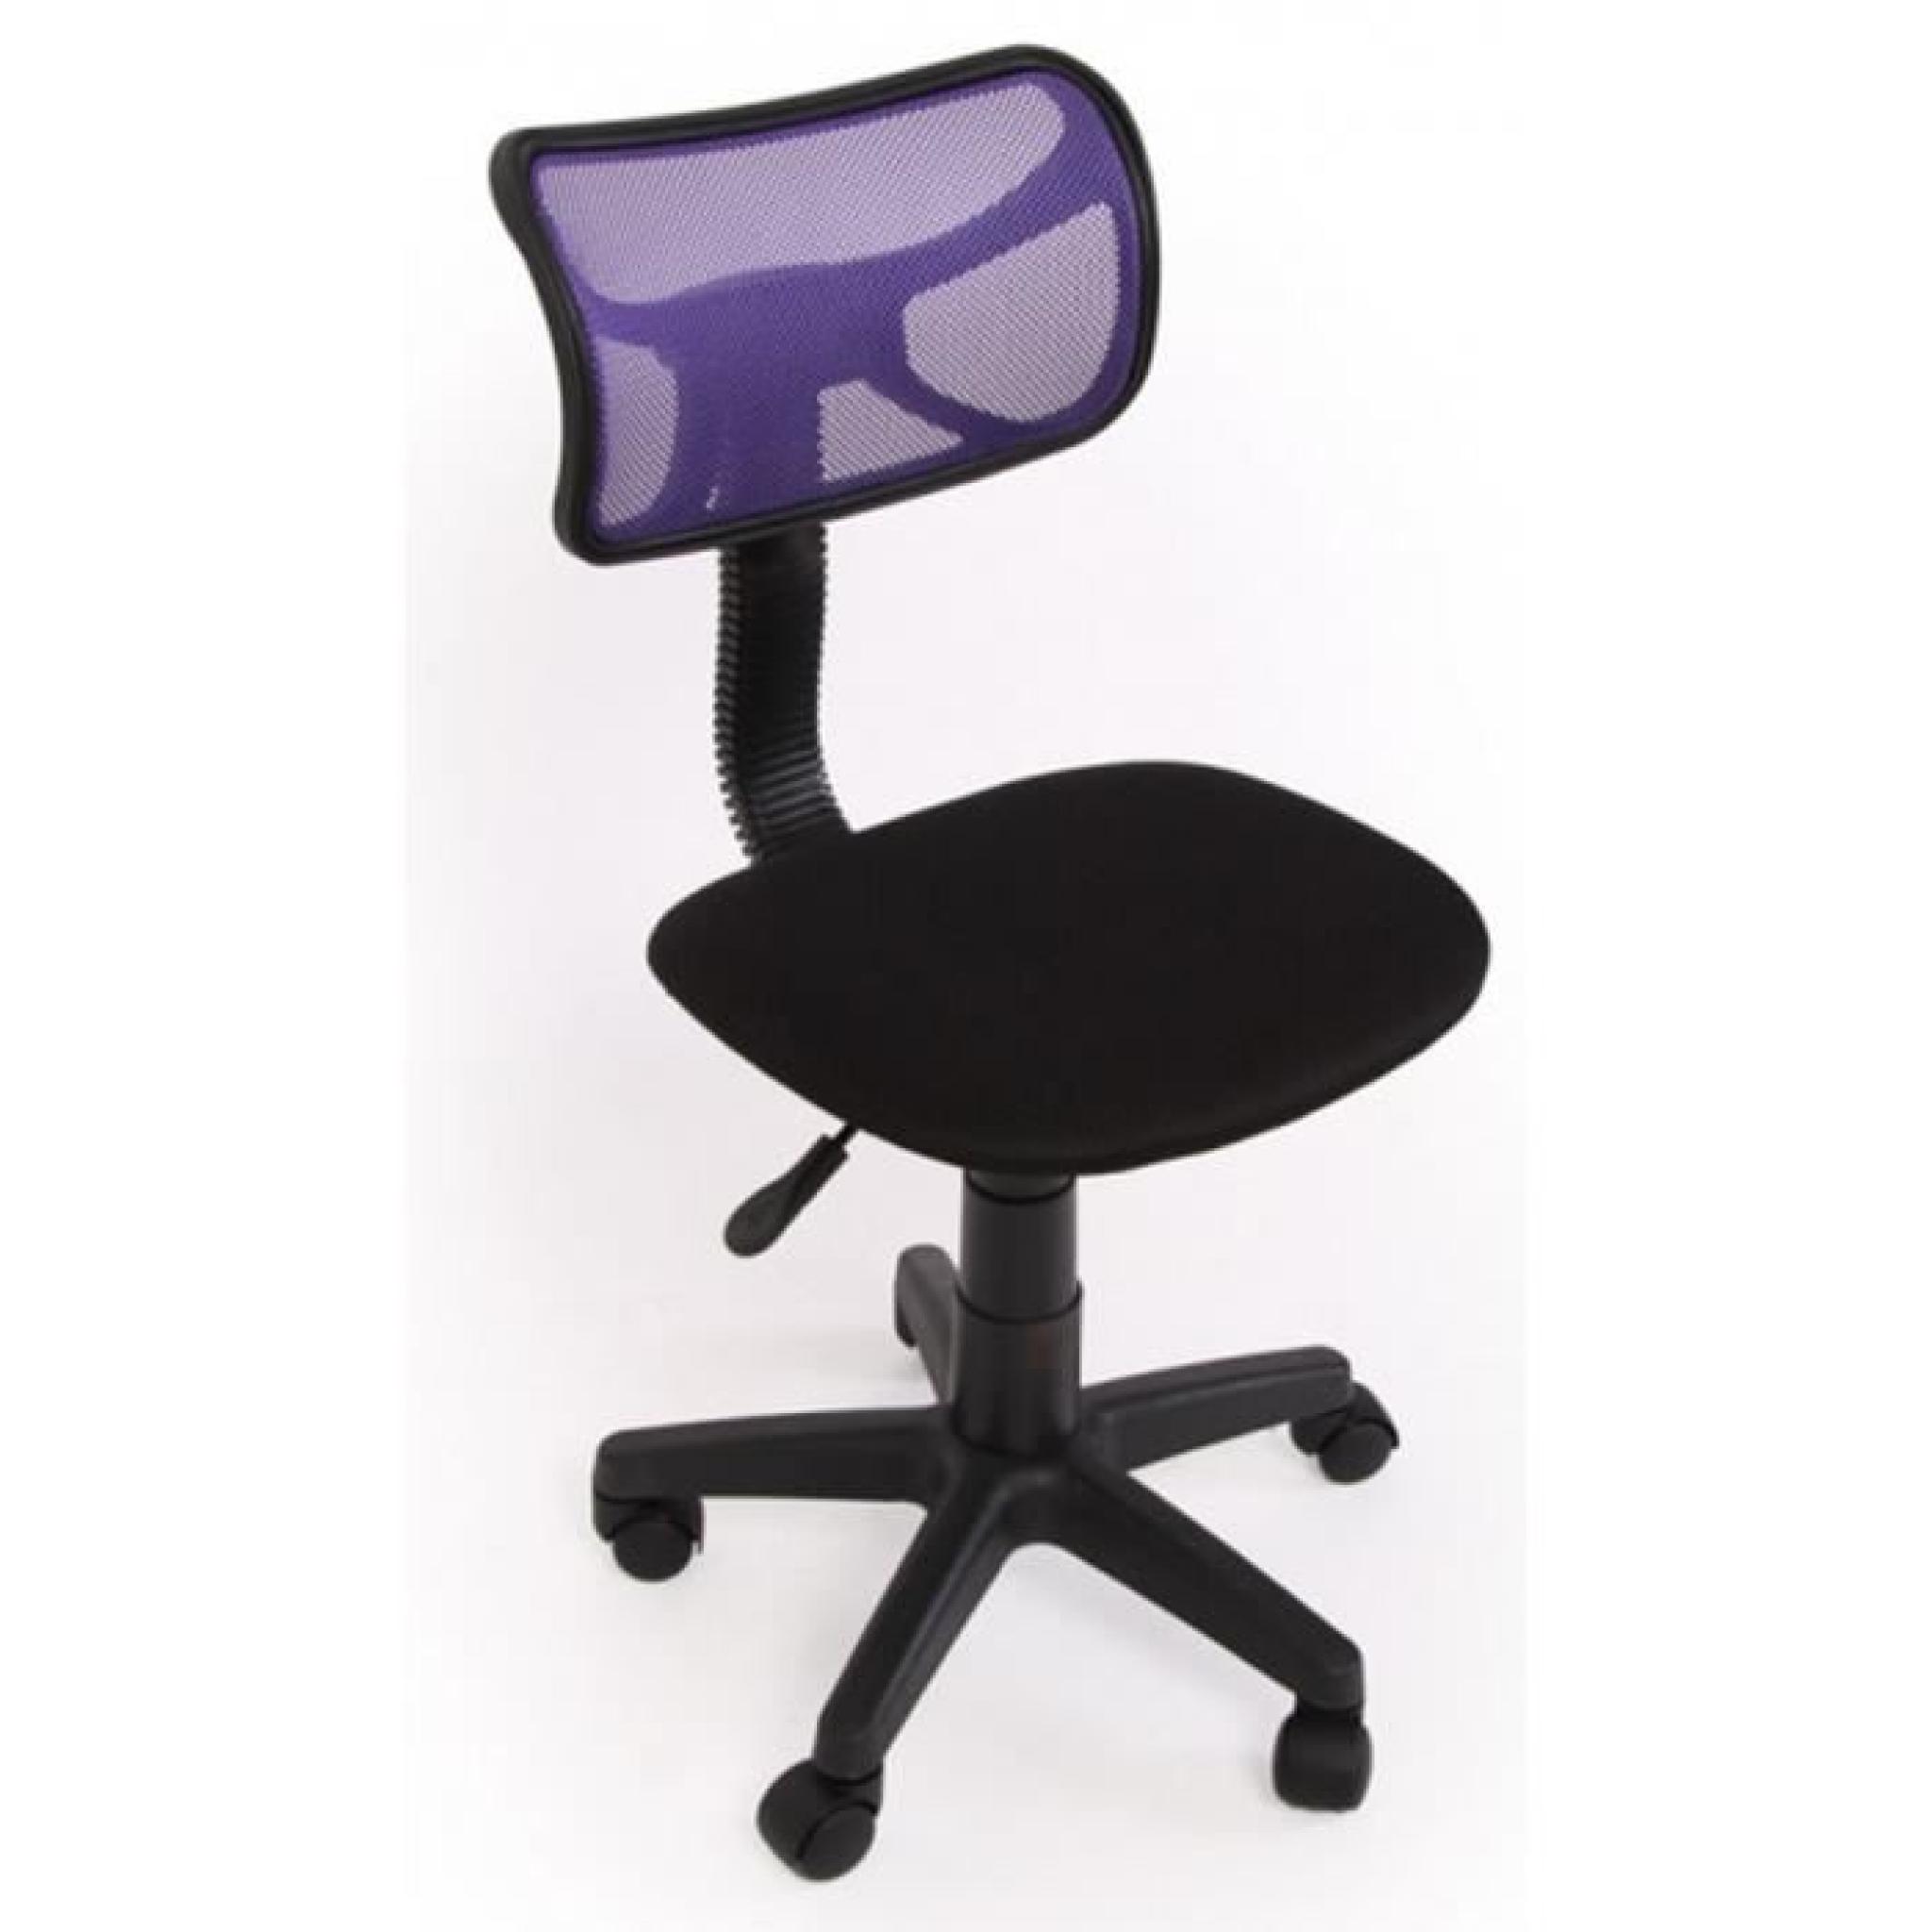 Chaise de bureau jeunesse Coloris violet, Dim: H74-84 x L 48 x P48 cm